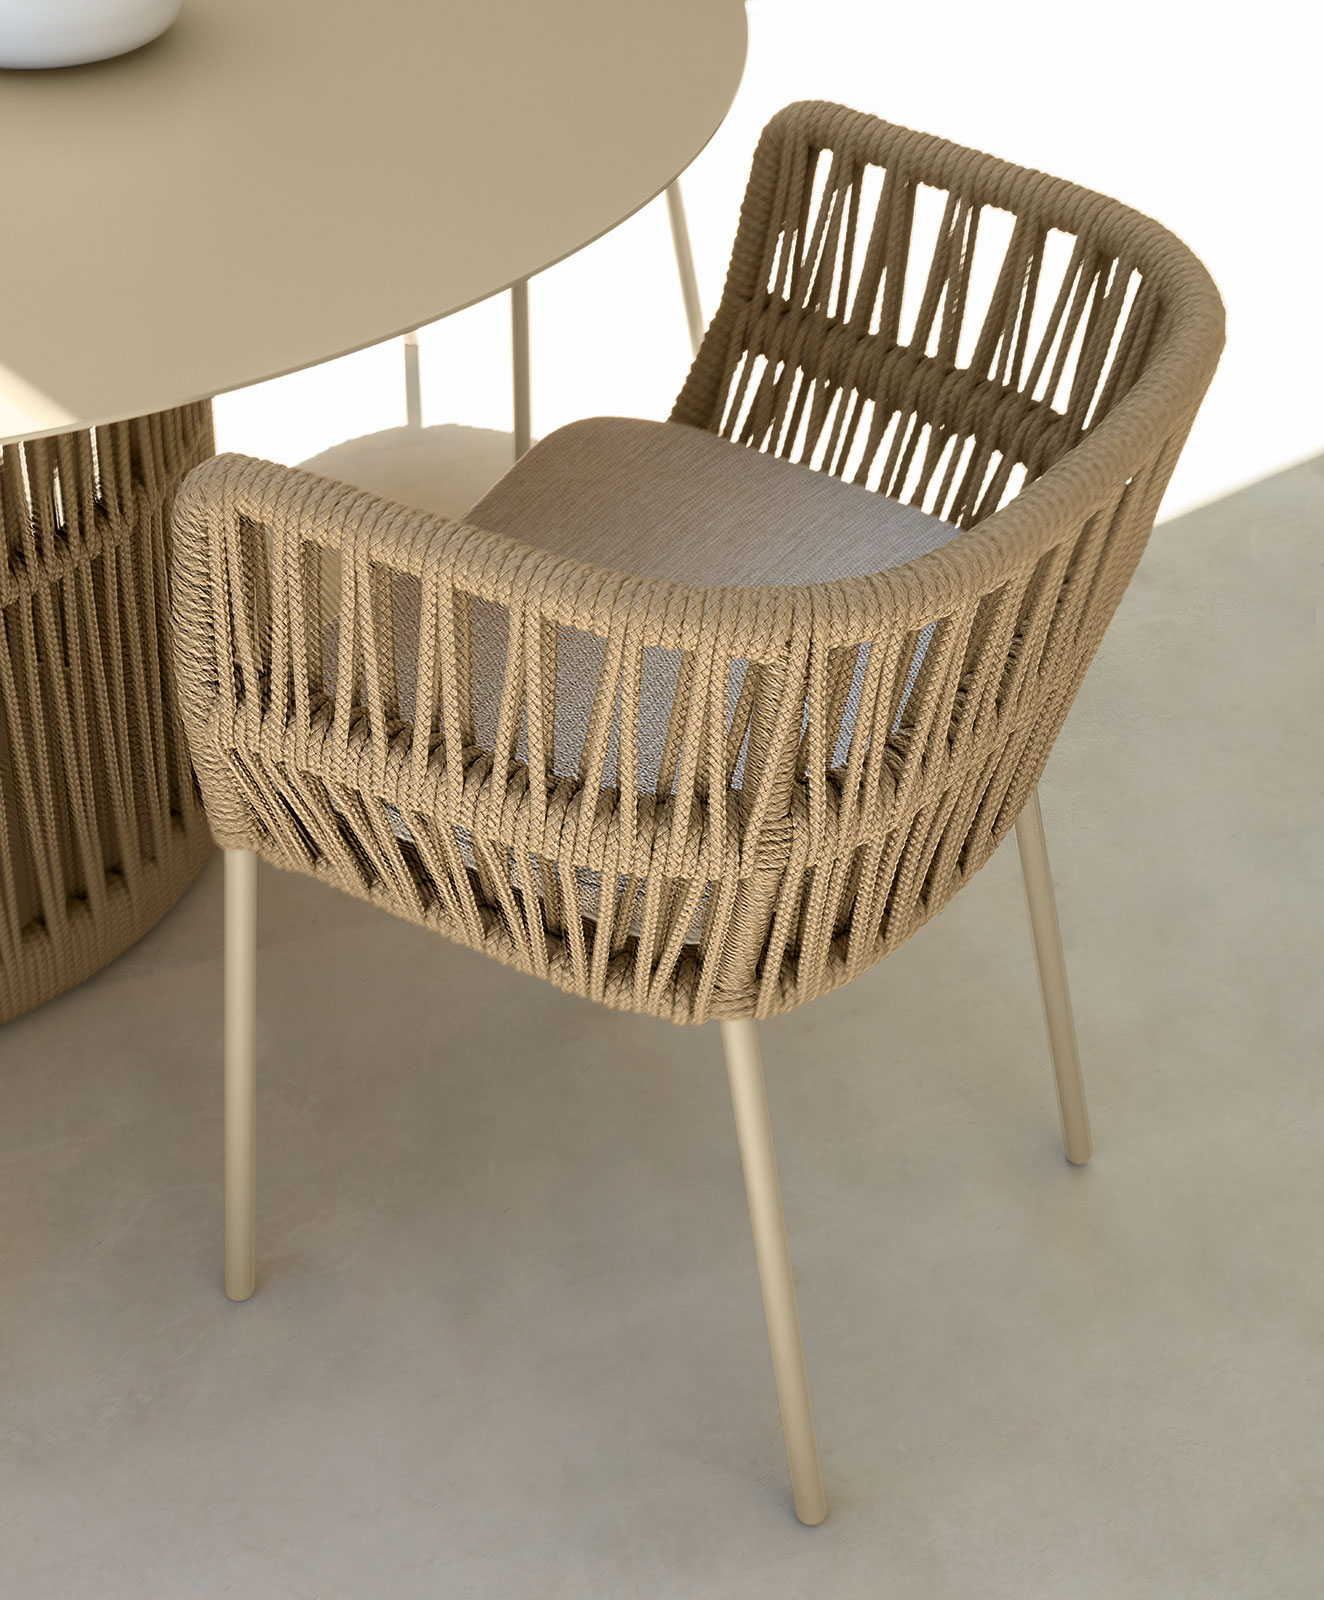 Table ronde de jardin originale en aluminium et corde beige. Vente en ligne de meubles design pour terrasses et balcons. Mobilier d'extérieur haut de gamme.